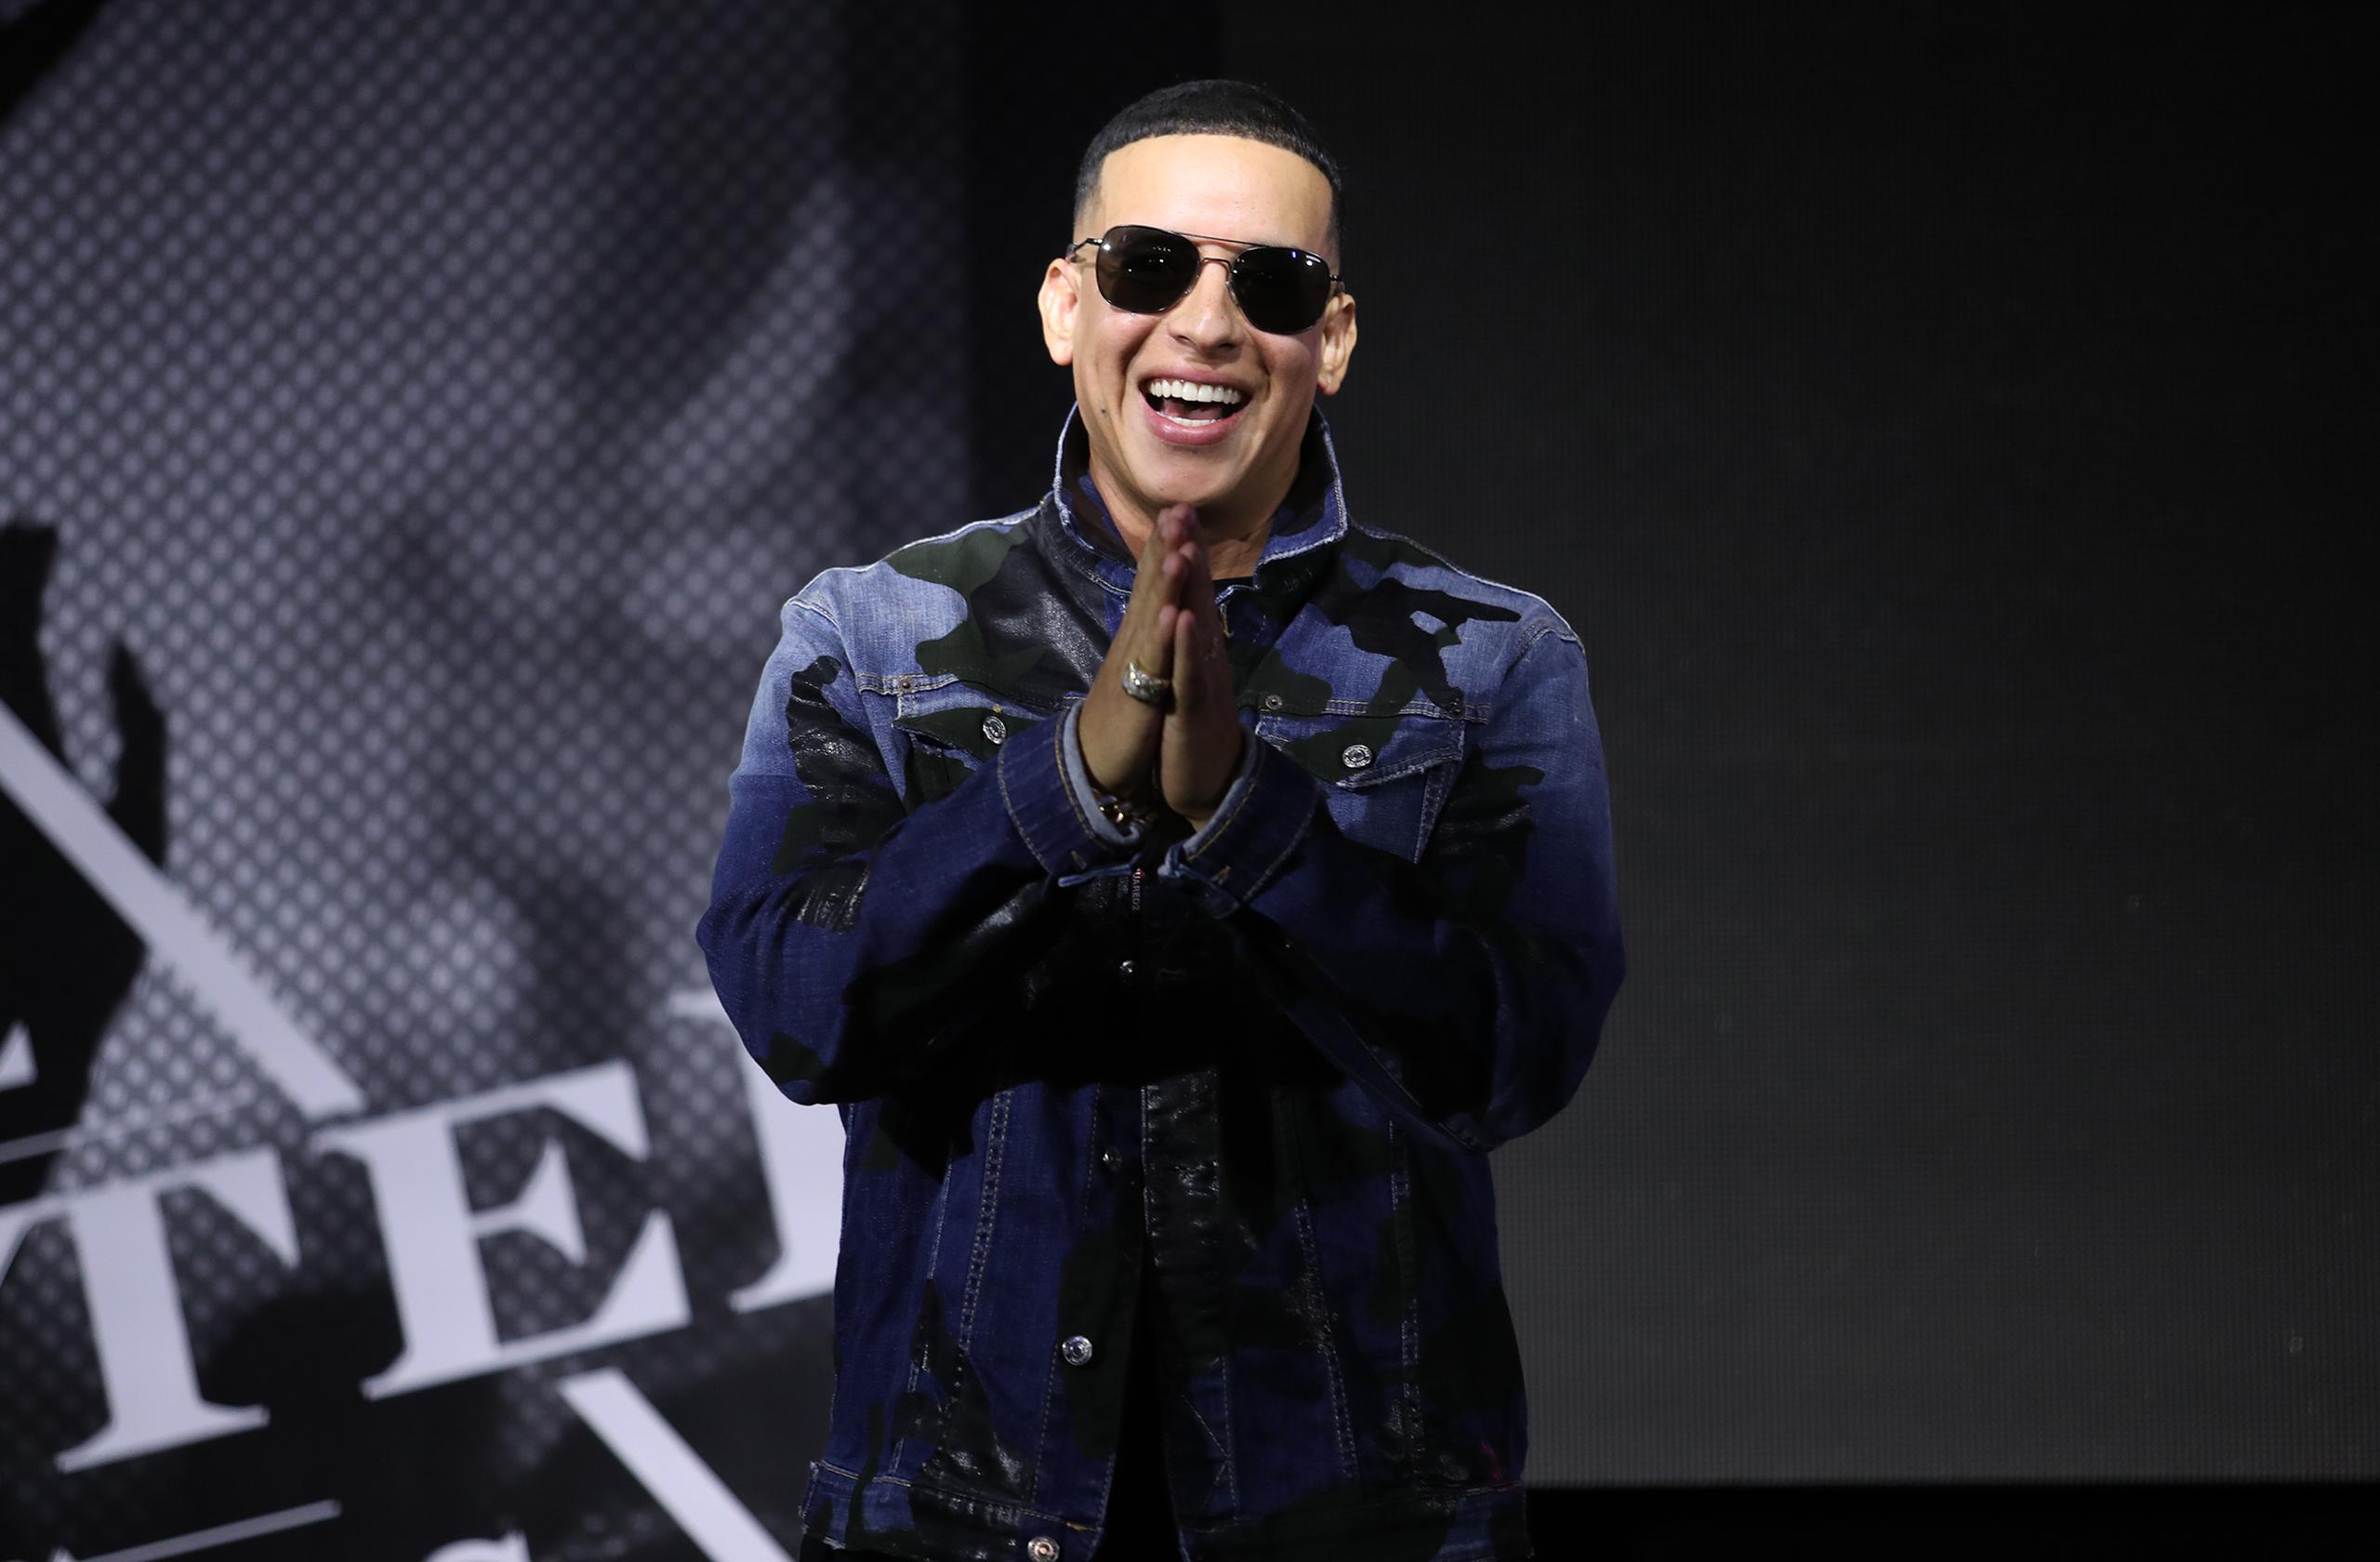 El tema, grabado por Daddy Yankee junto con Snow, en el 2019, supera los 1.8 billones de vistas en Youtube.